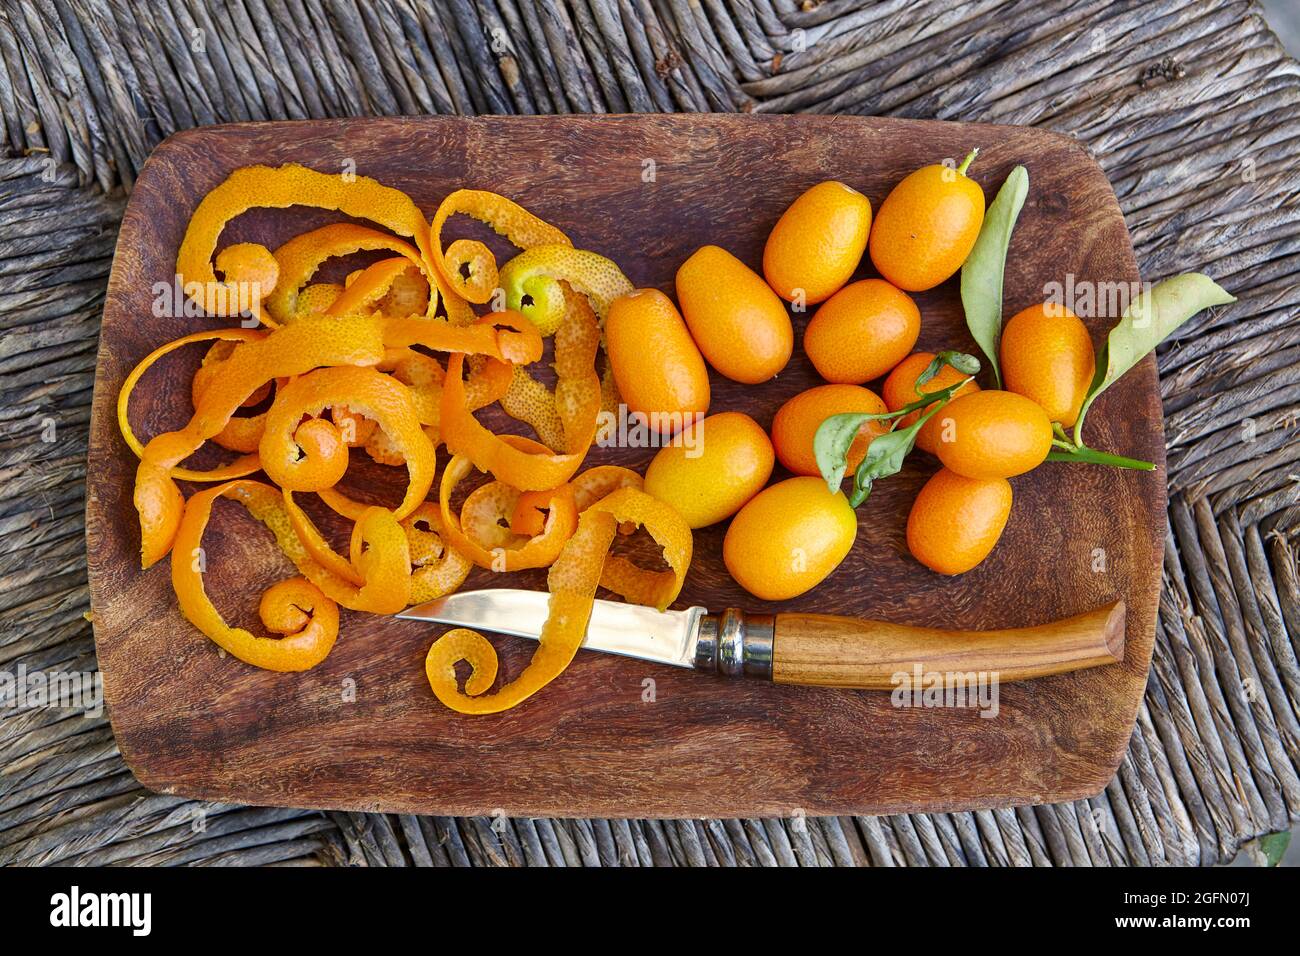 Présentation de kumquats fraîchement cueillis, de la peau de kumquat et d'un couteau à fruits dans un bol en bois Banque D'Images